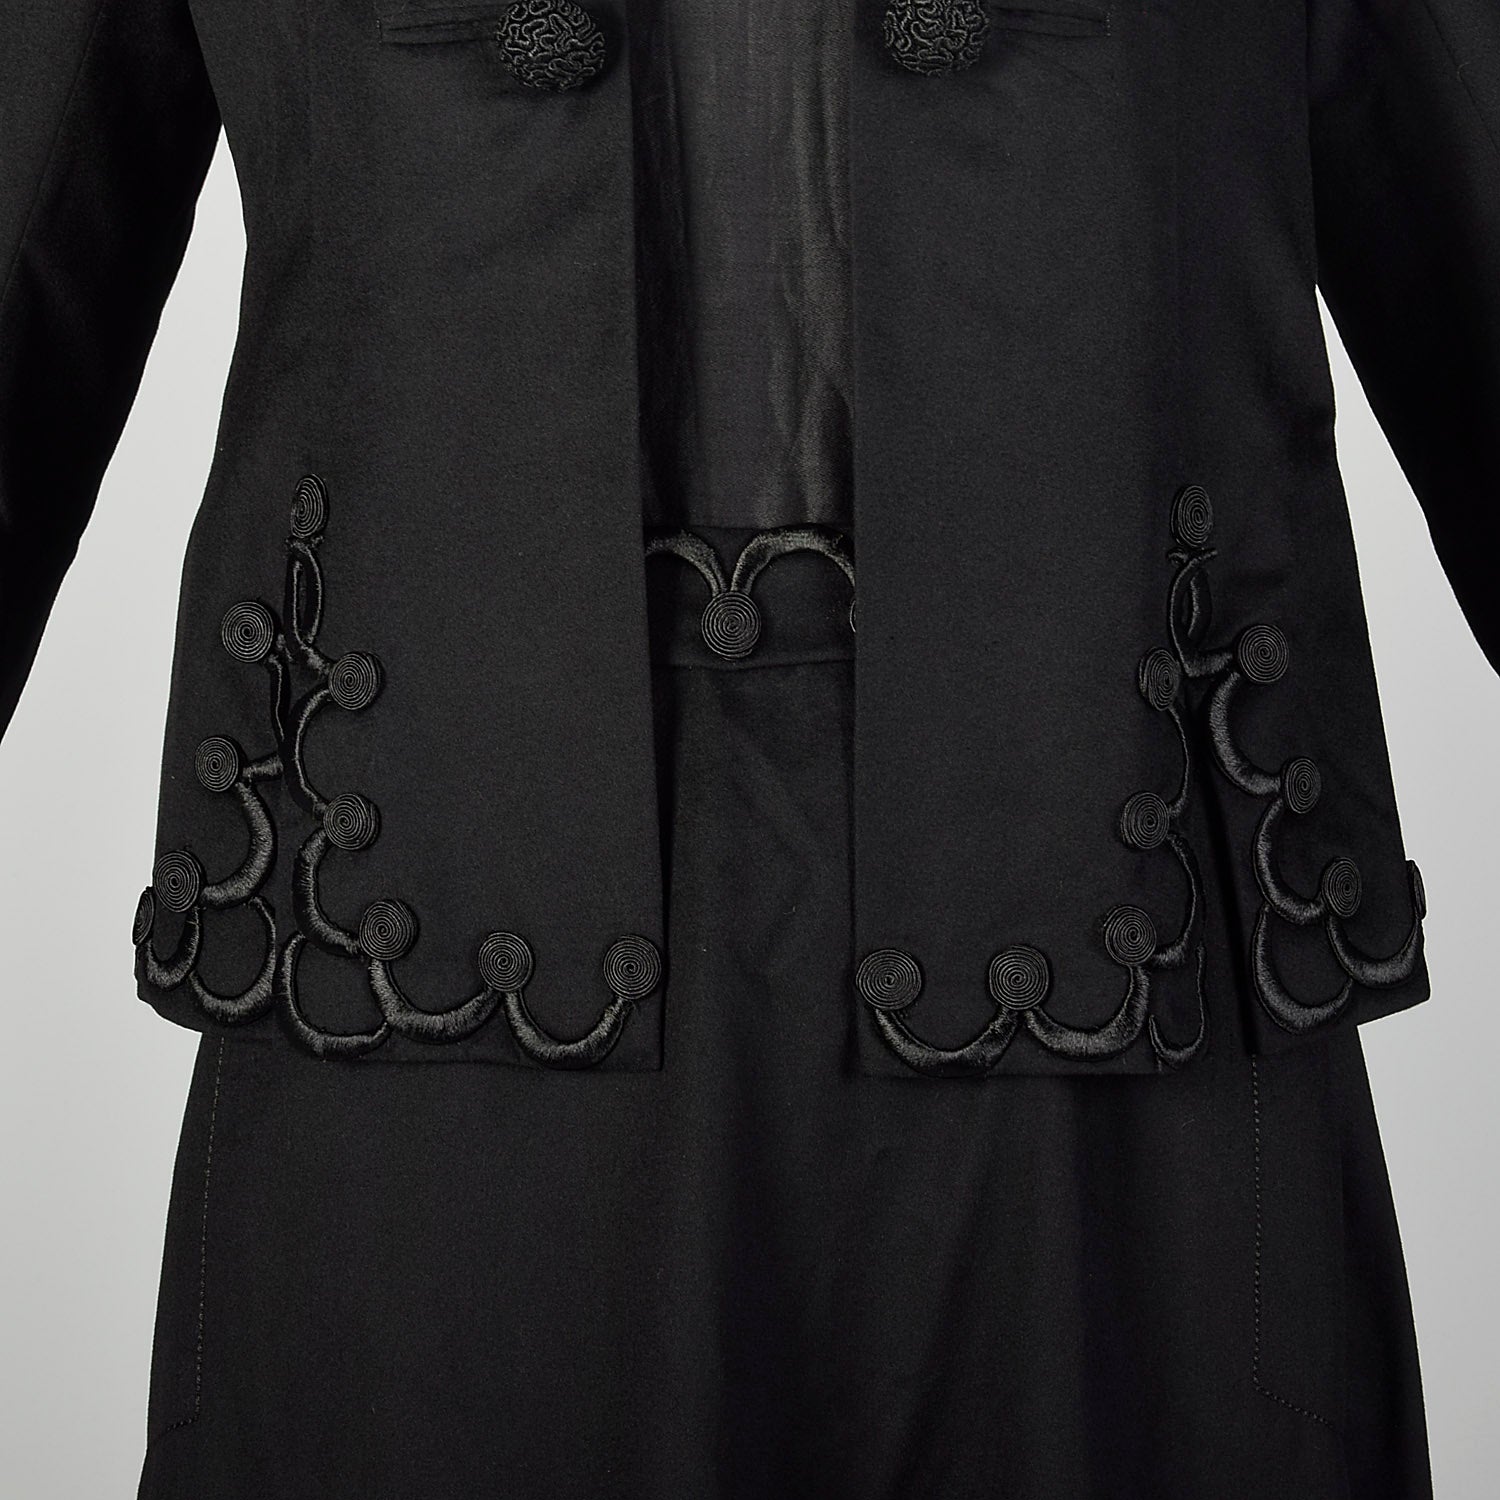 1910s Edwardian Walking Suit Black Wool Cotton Three Piece Ensemble Jacket Blouse Skirt